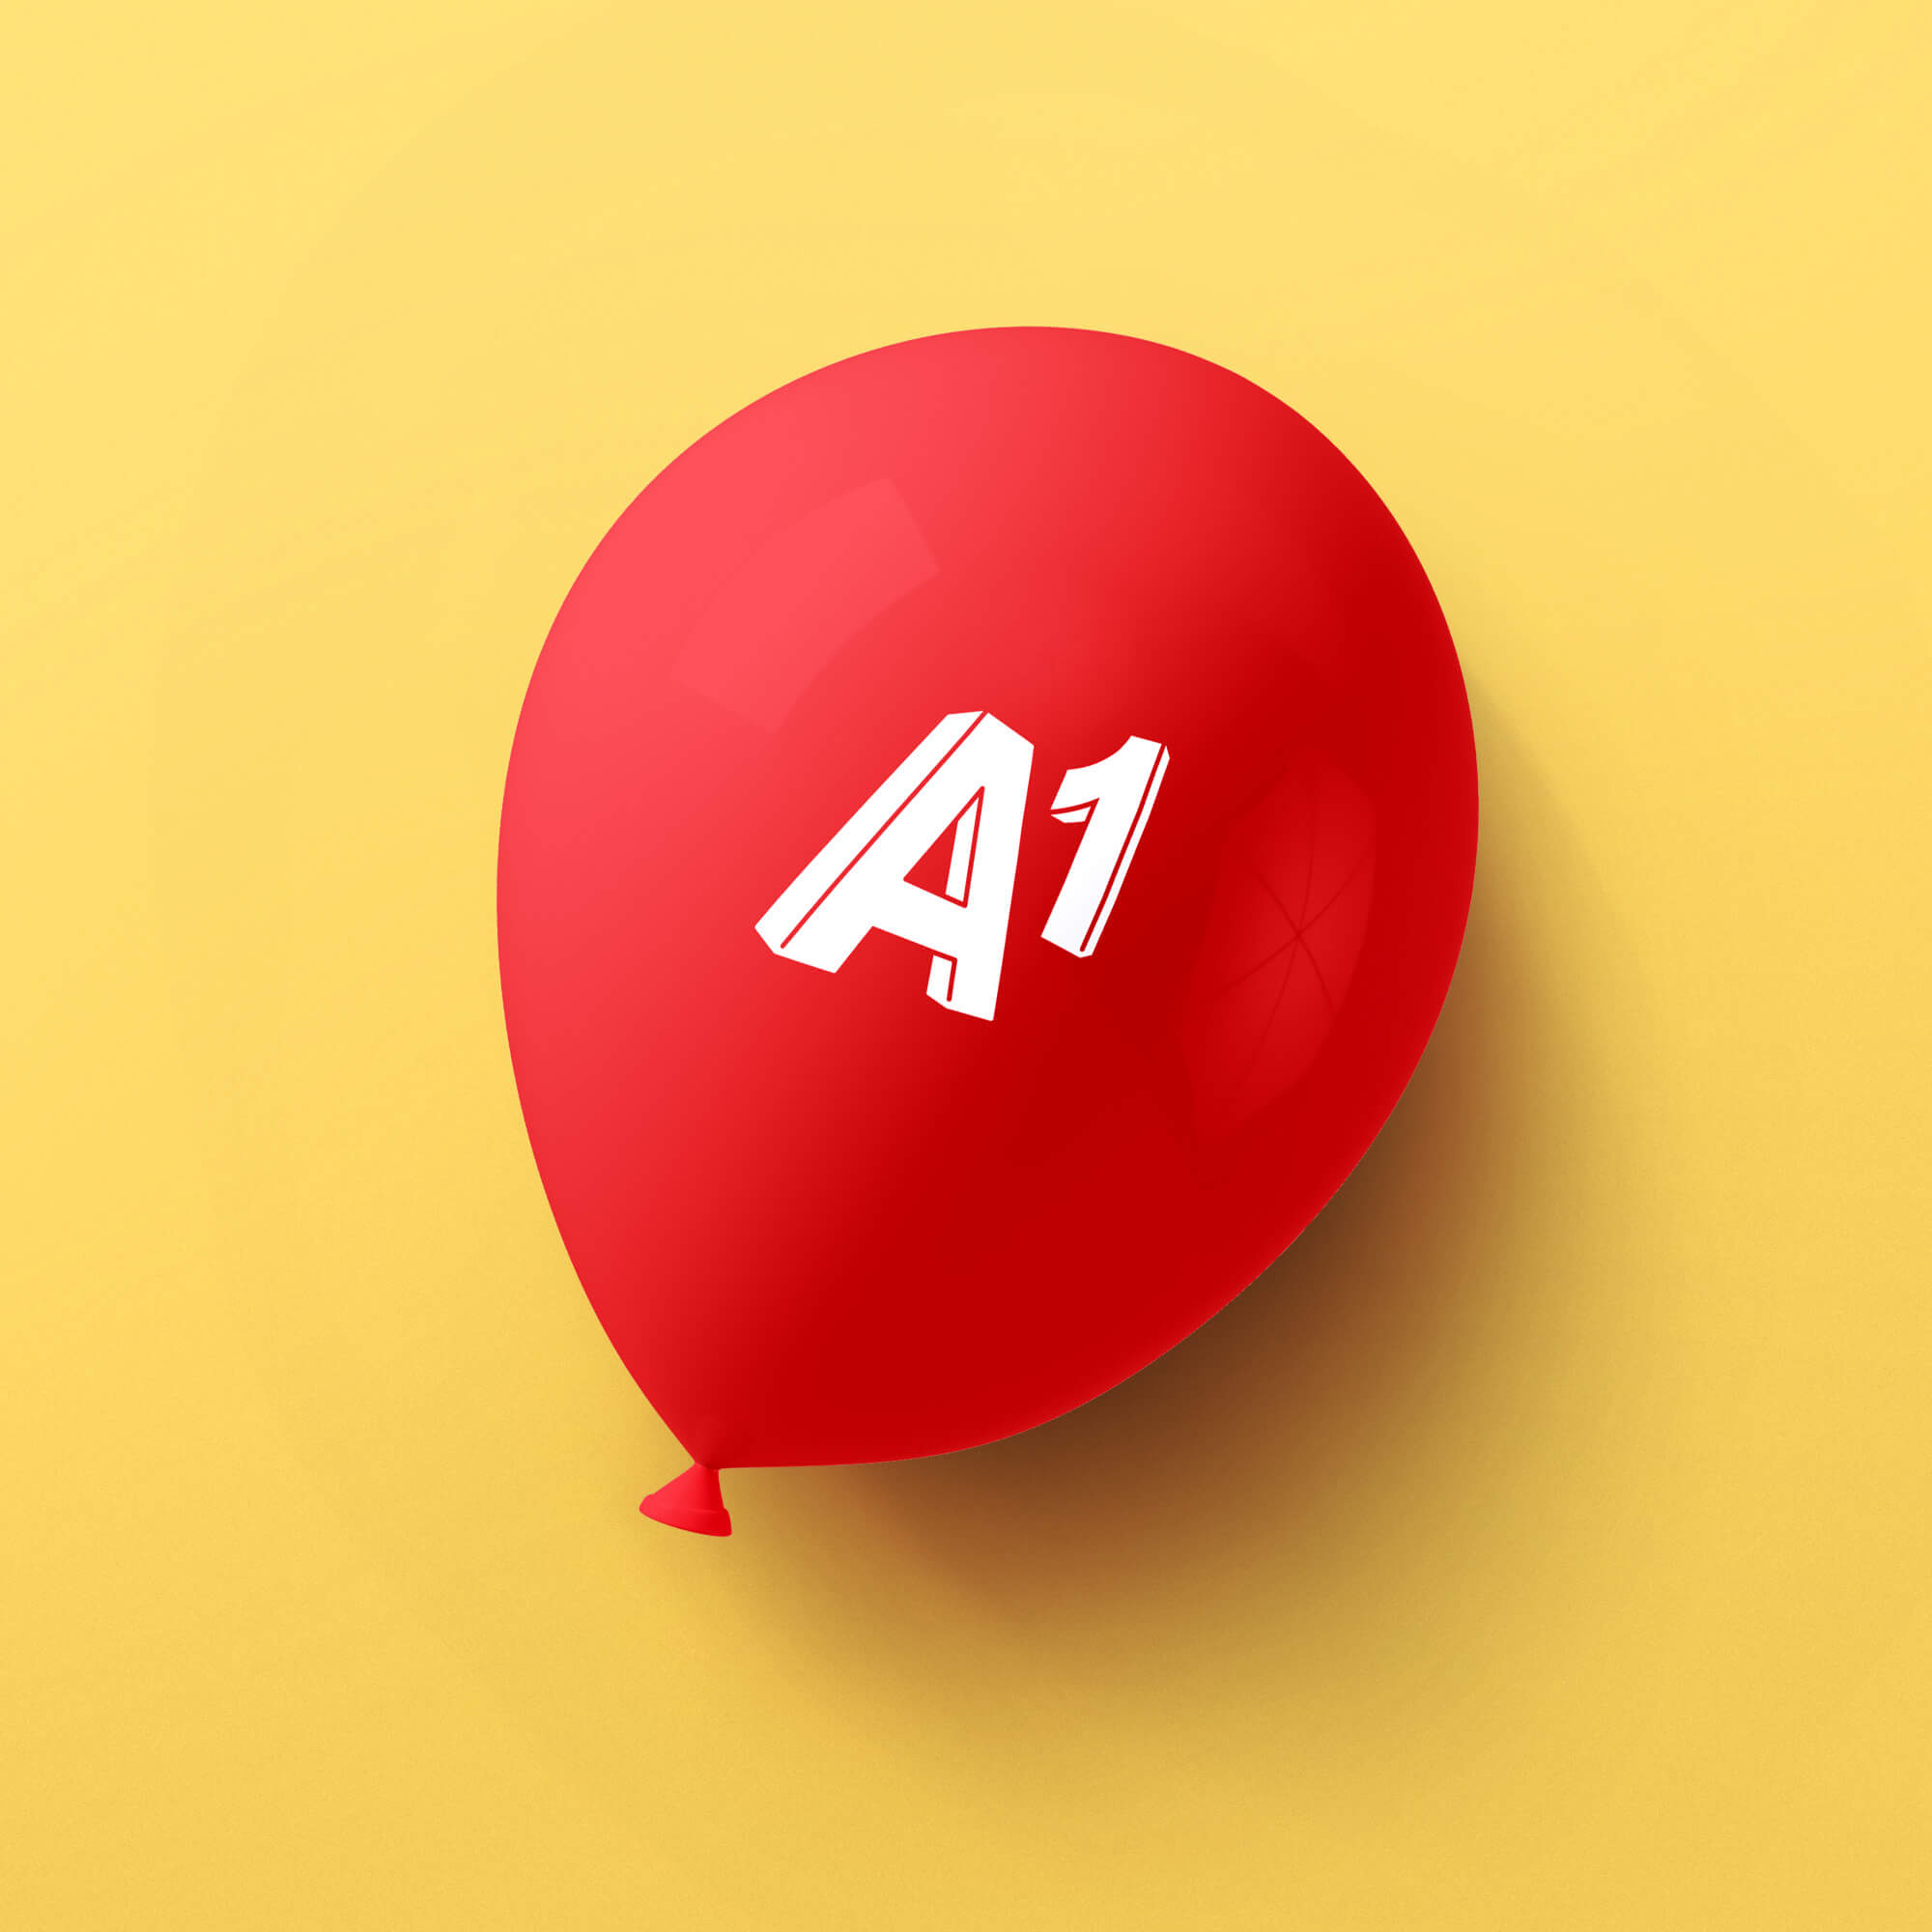 A1 baloon